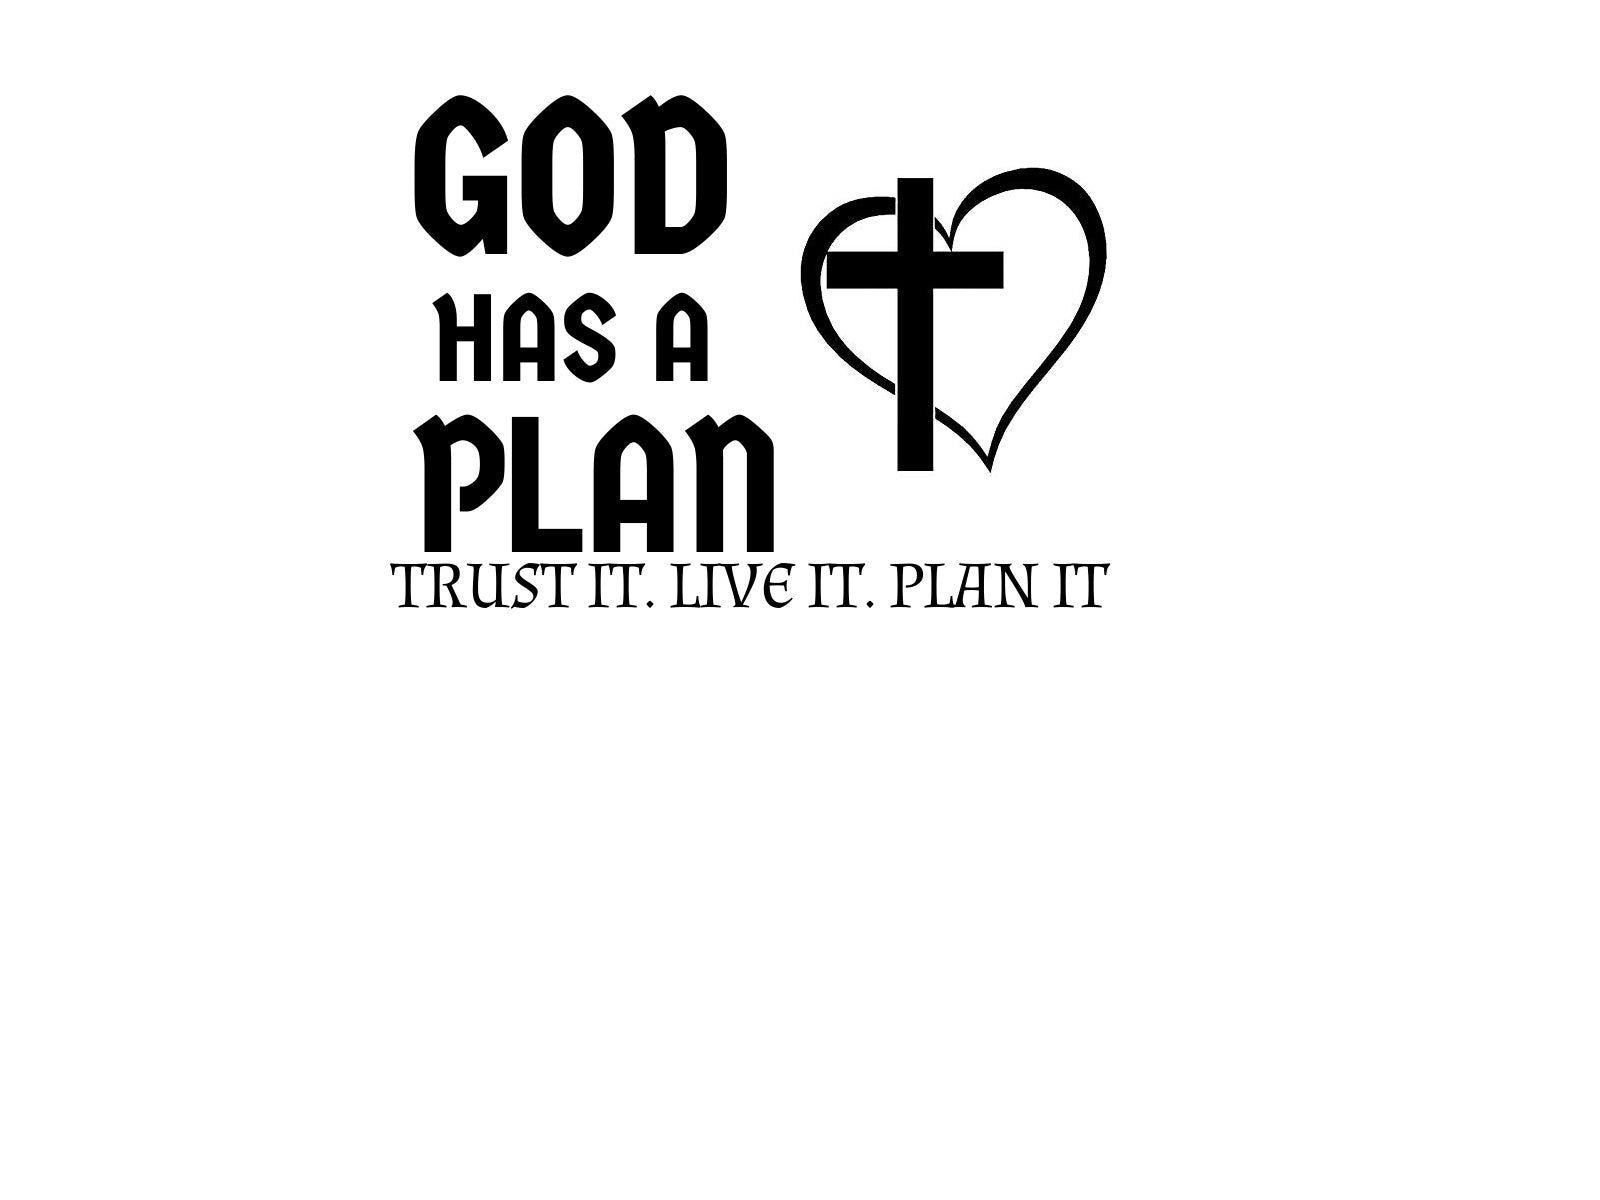 God Has A Plan